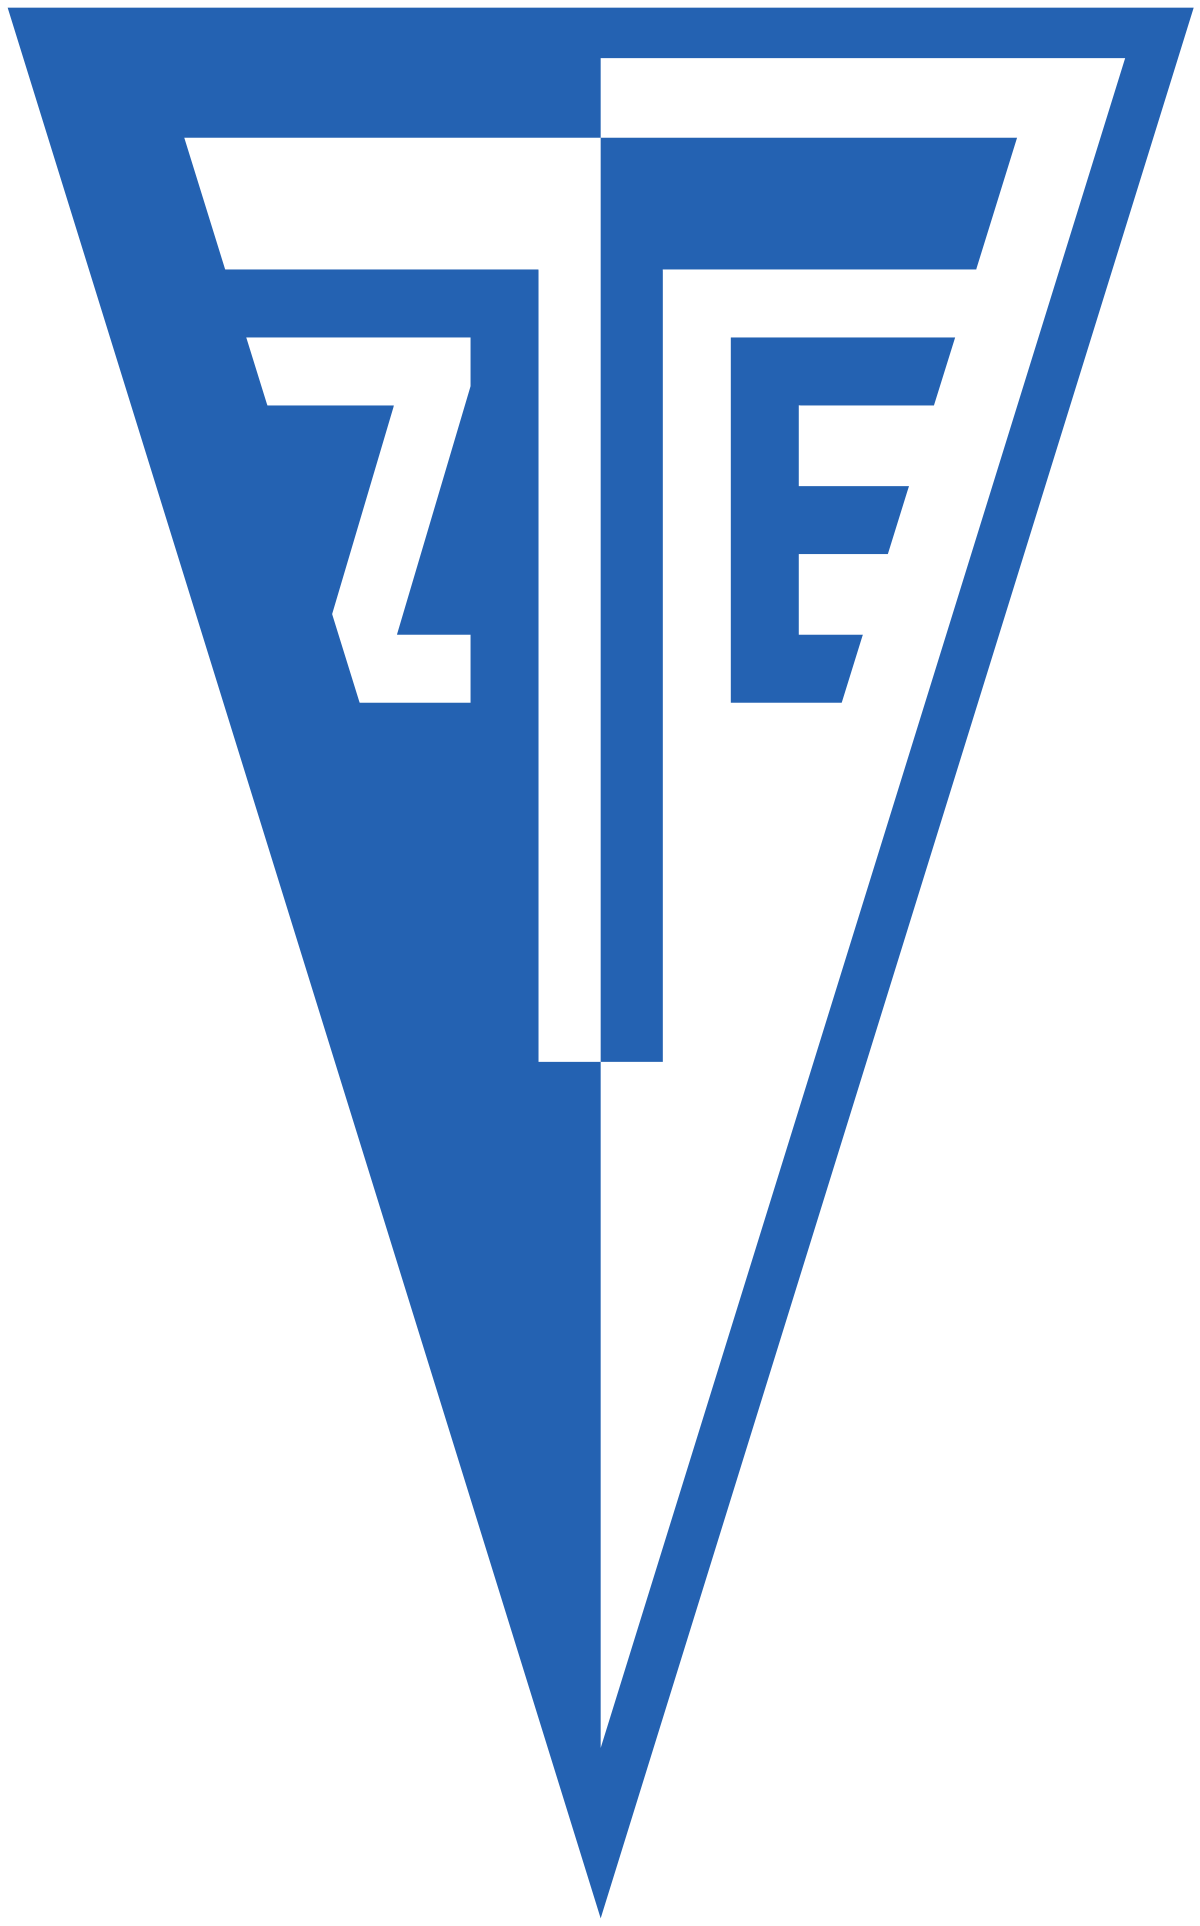 logo ZTE FC II.